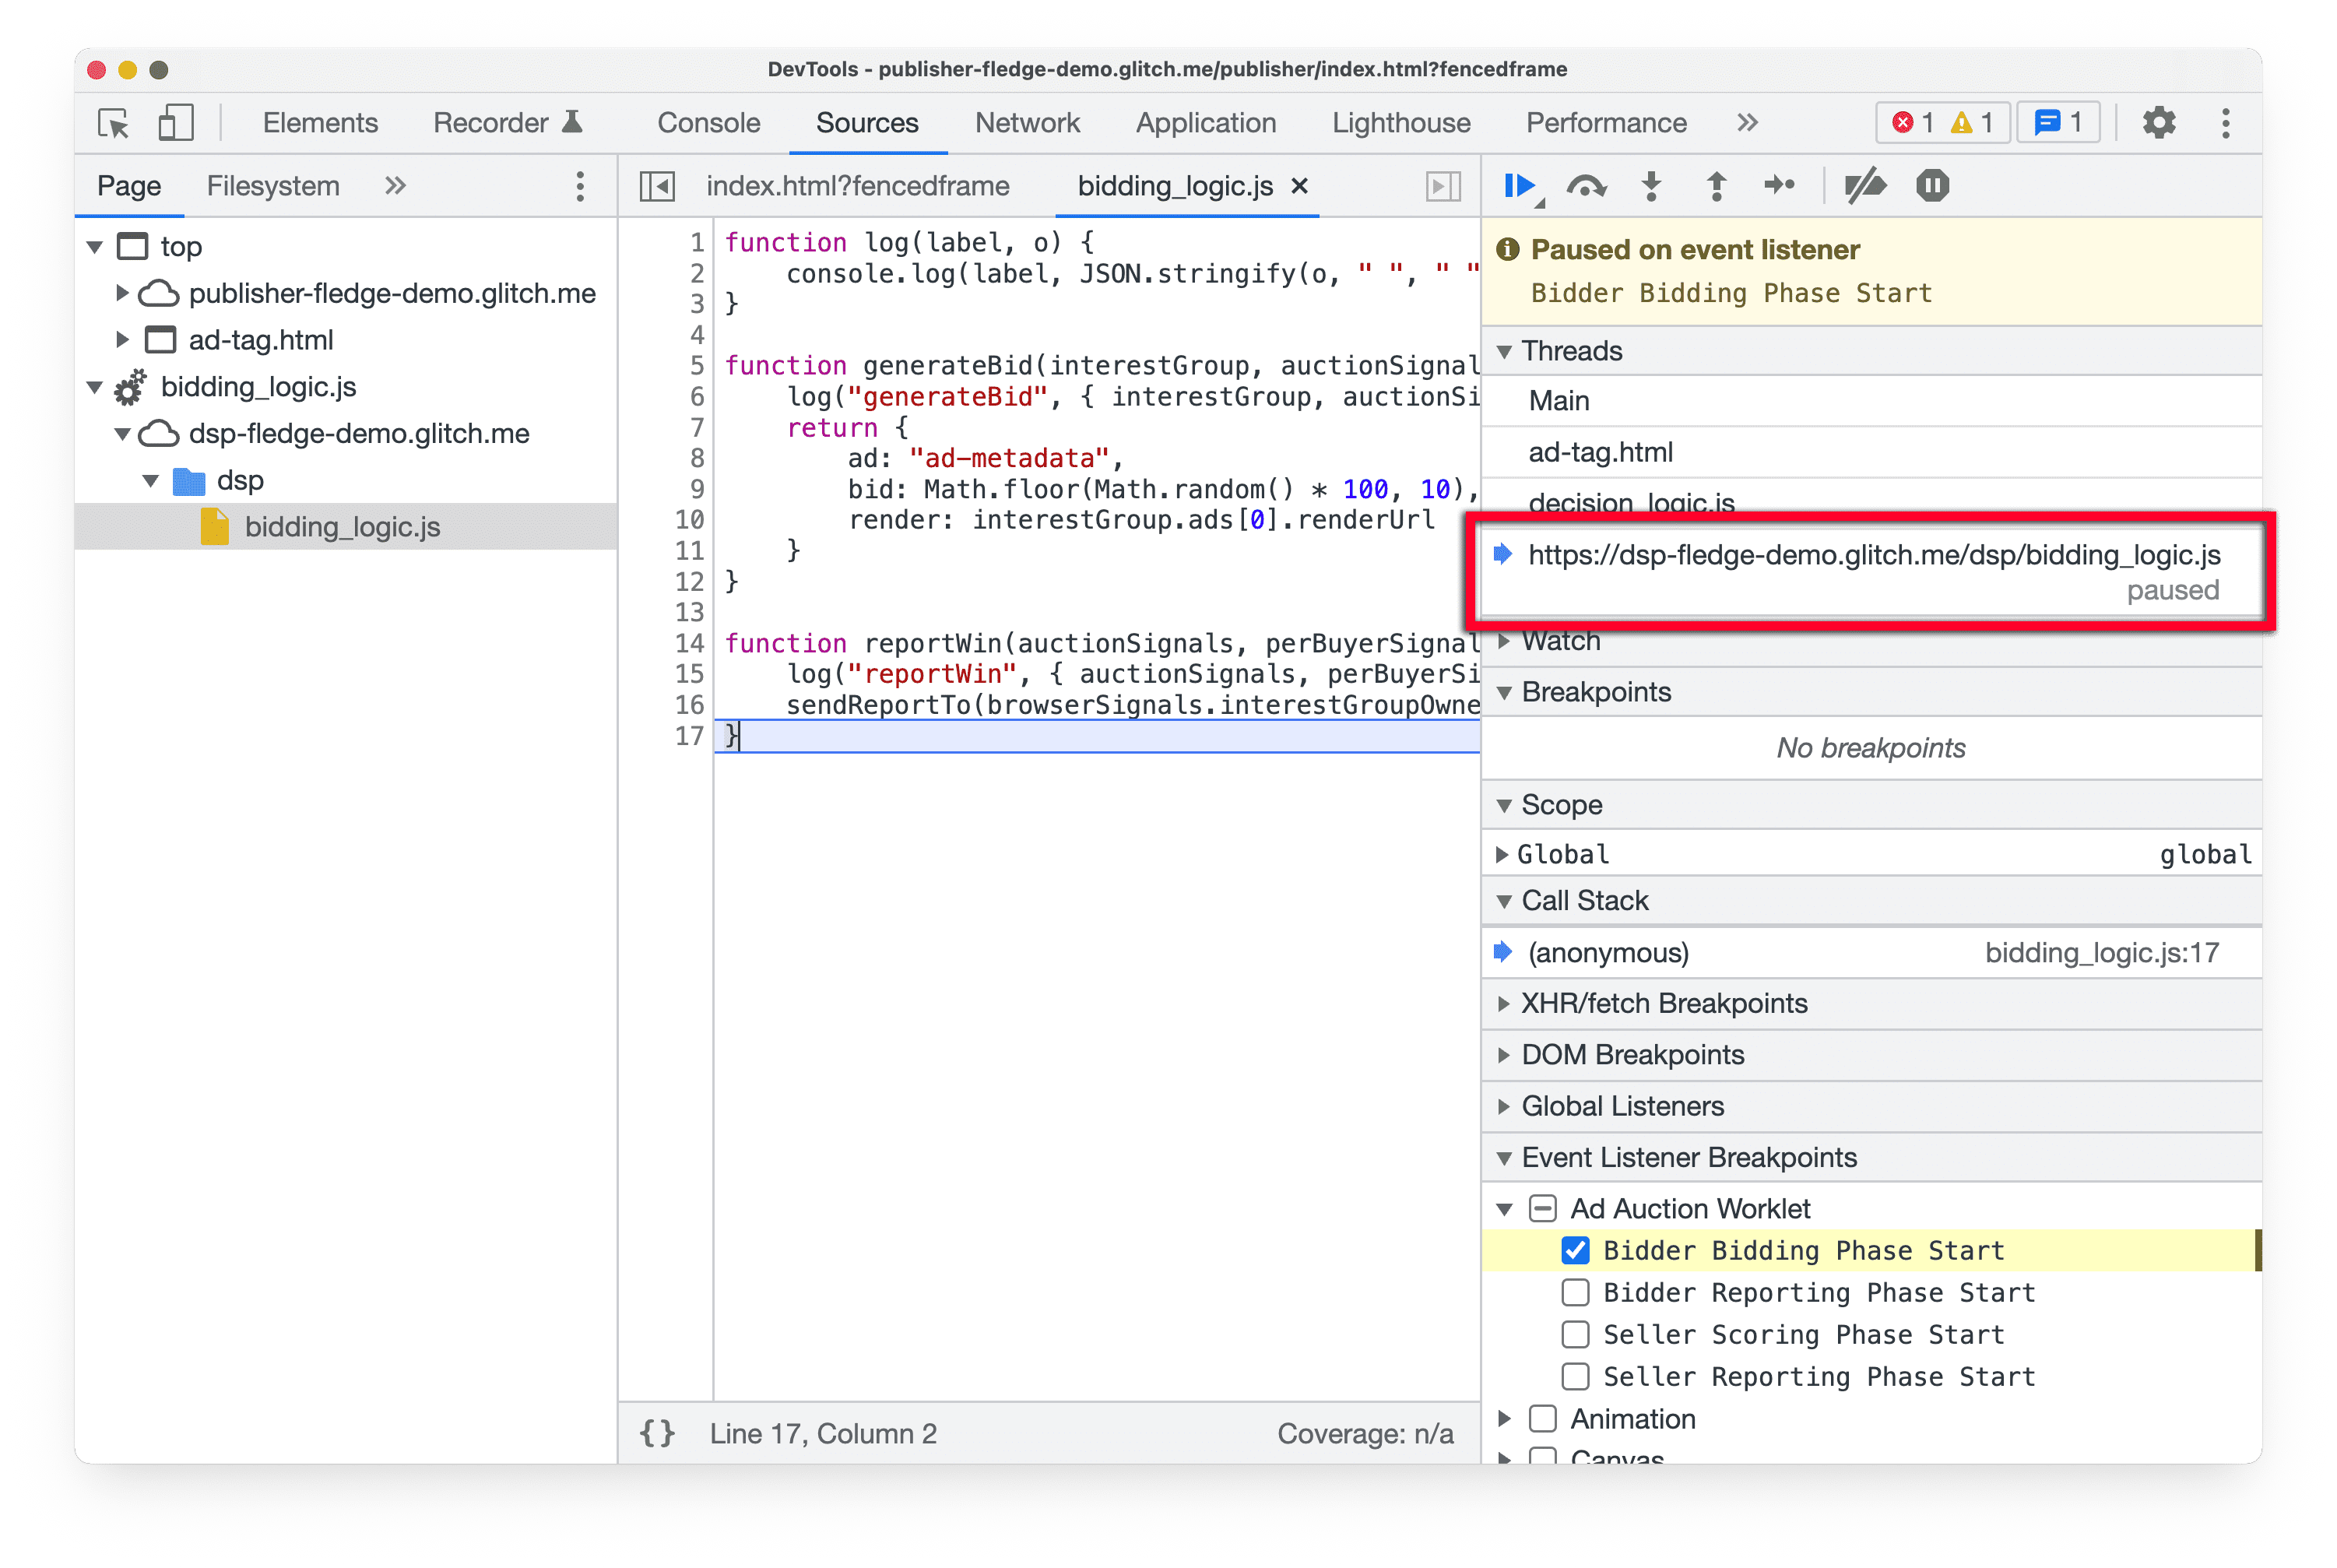 Captura de tela do
DevTools no Chrome Canary, destacando o painel &quot;Threads&quot; no painel &quot;Sources&quot;, mostrando o script
de worklet atual que foi pausado.